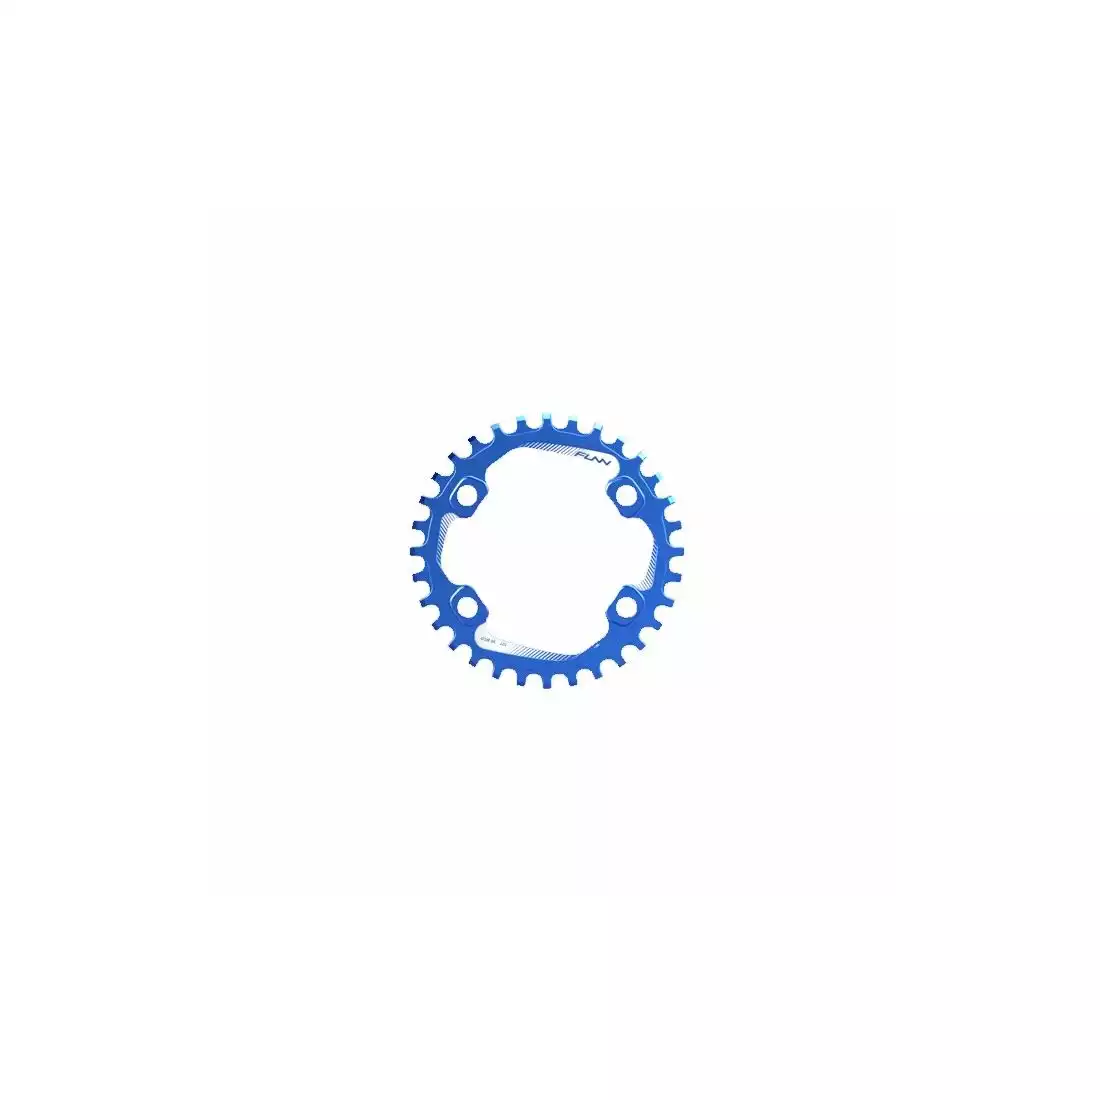 FUNN SOLO 96 BCD NARROW WIDE 30T řetězové kolo na kliku modrý